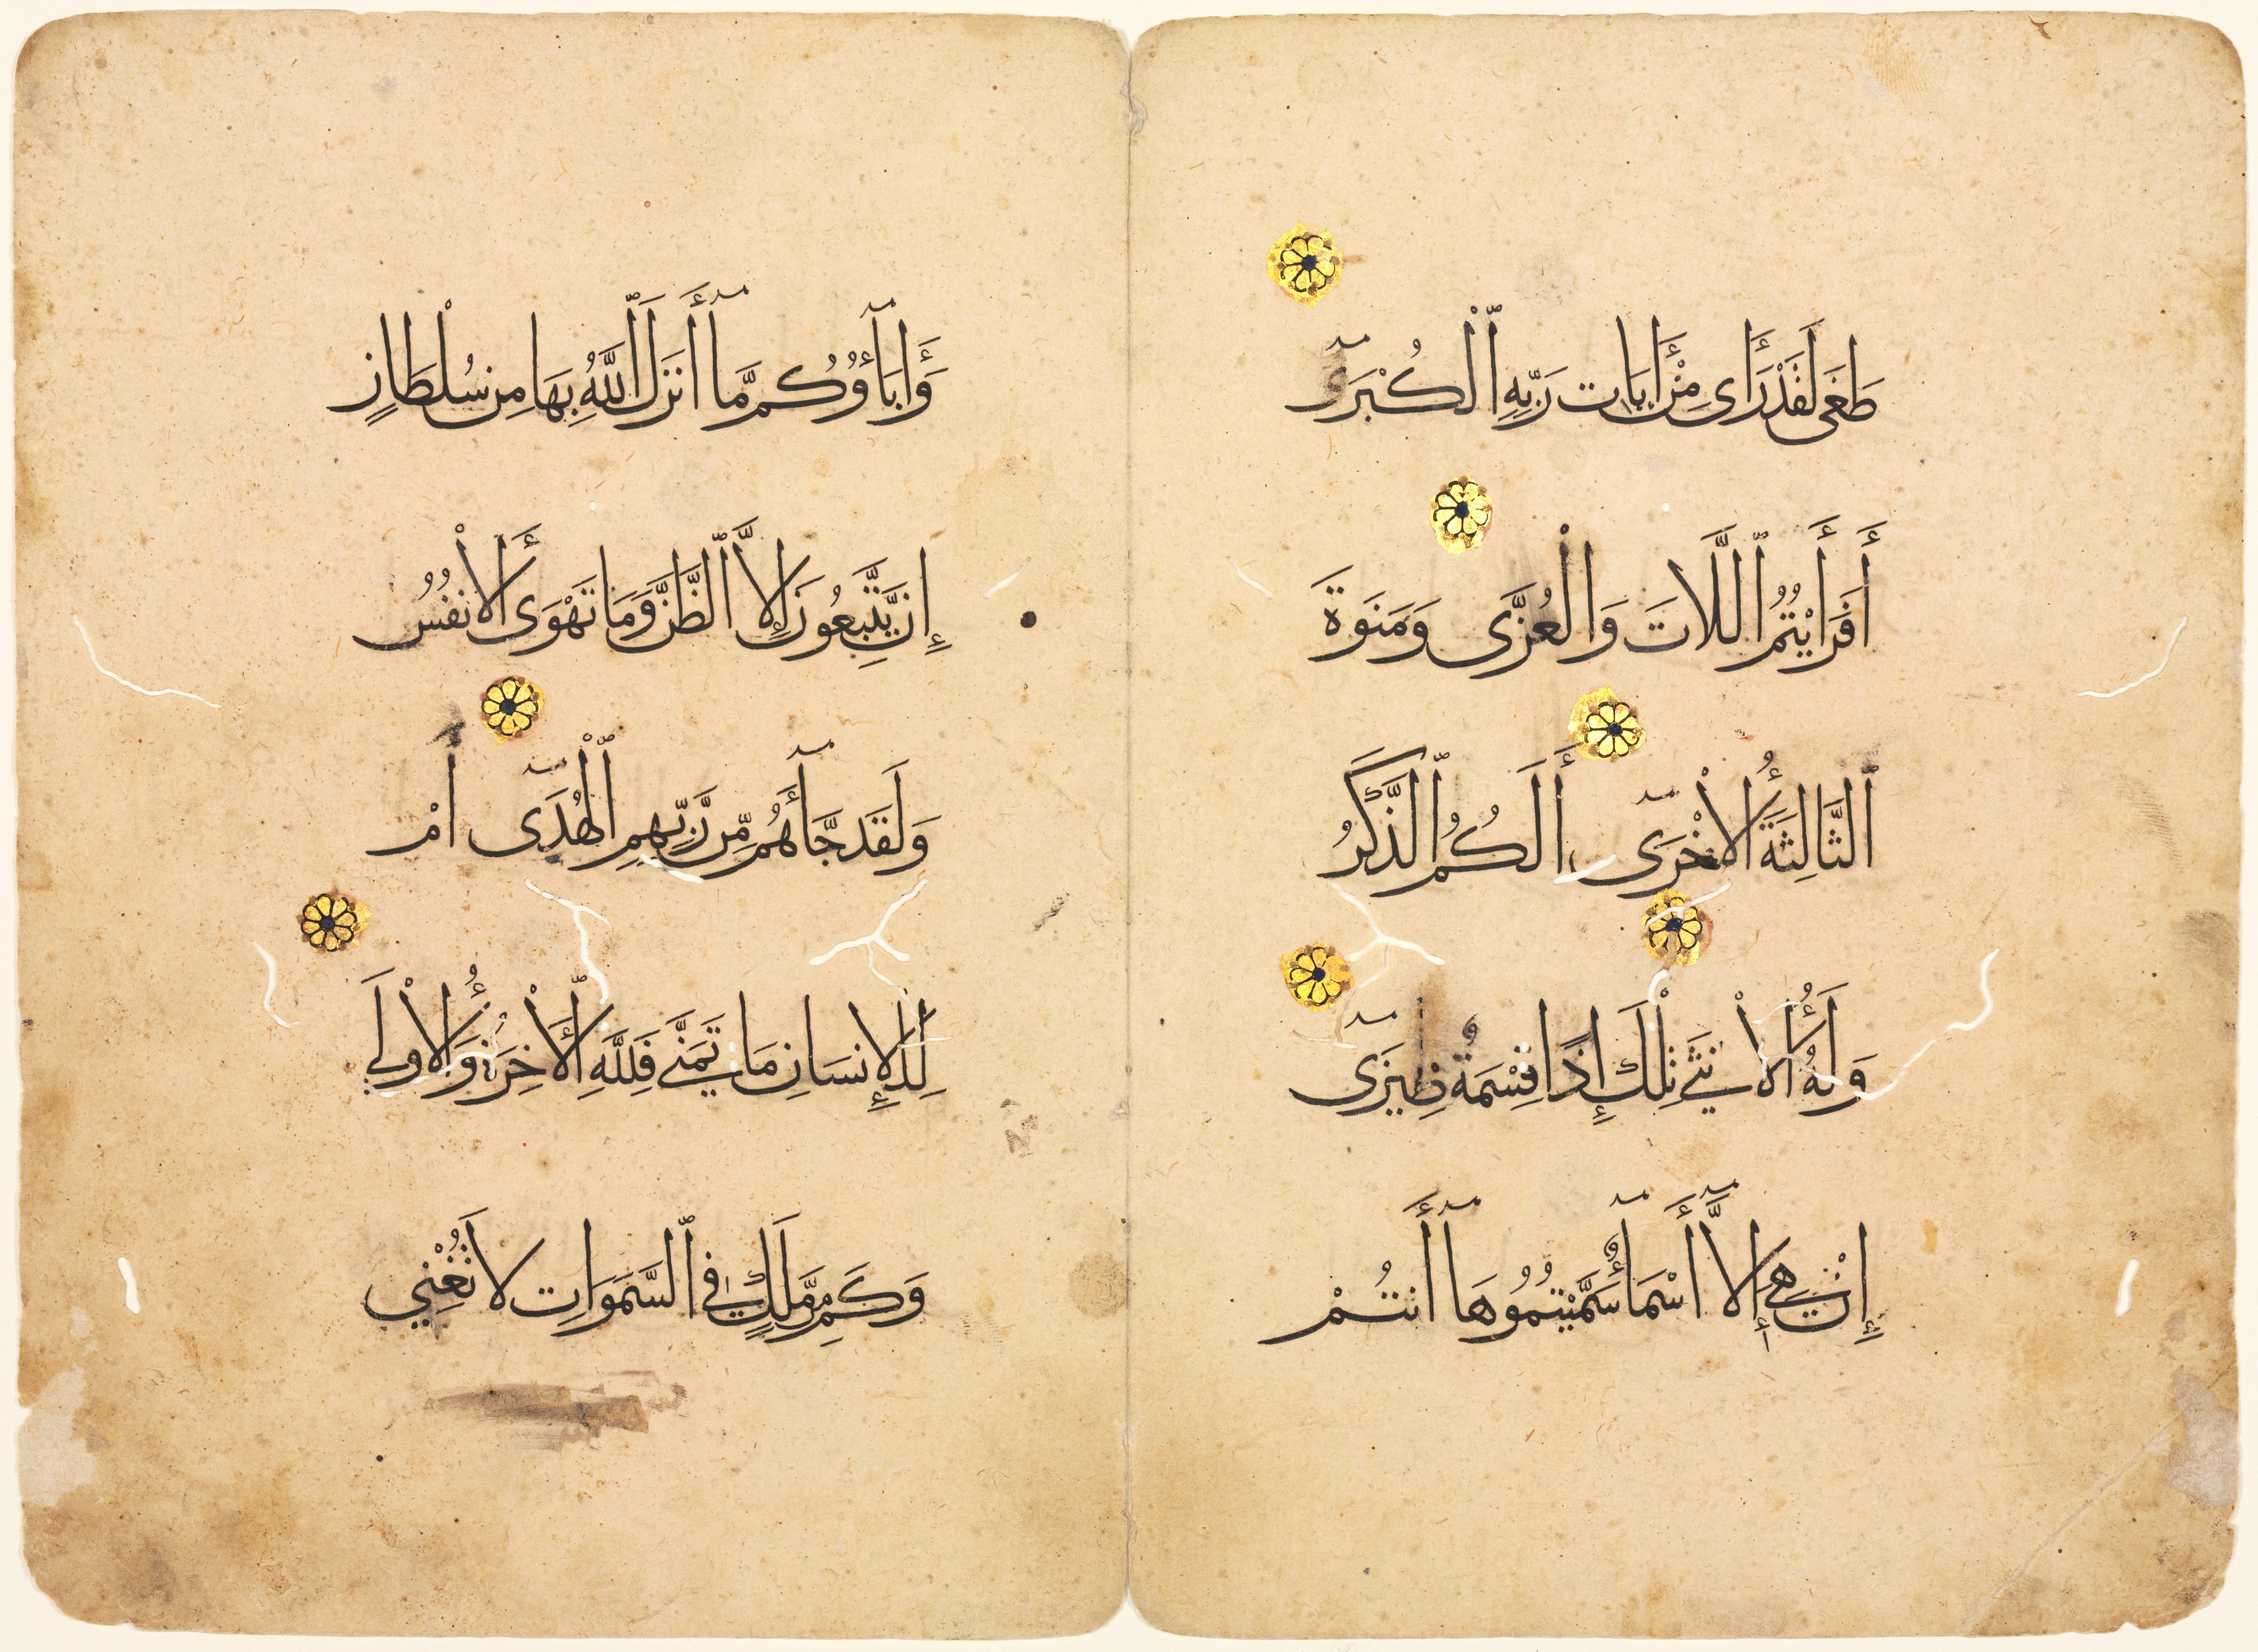 Qur'an Manuscript Folio